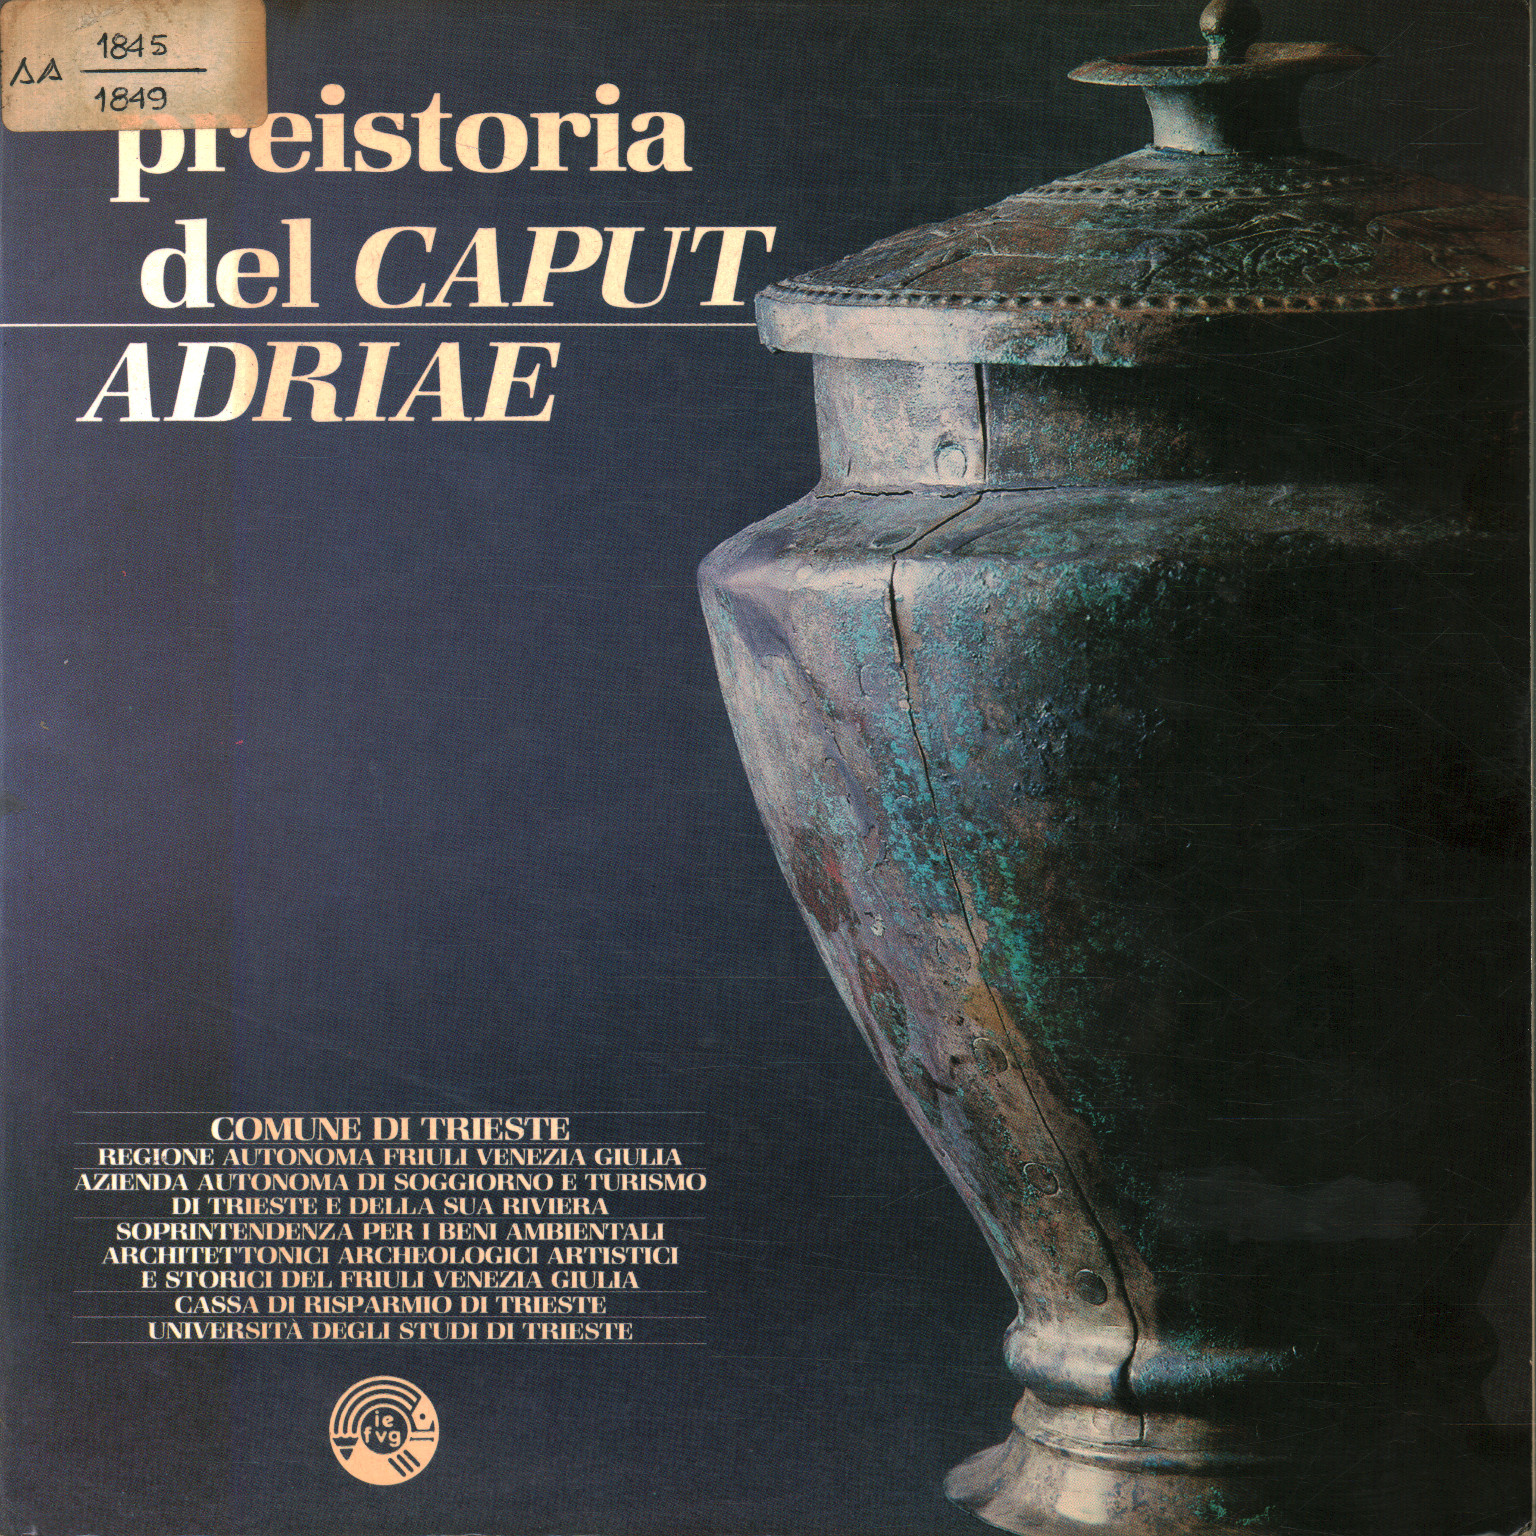 Vorgeschichte von Caput adriae